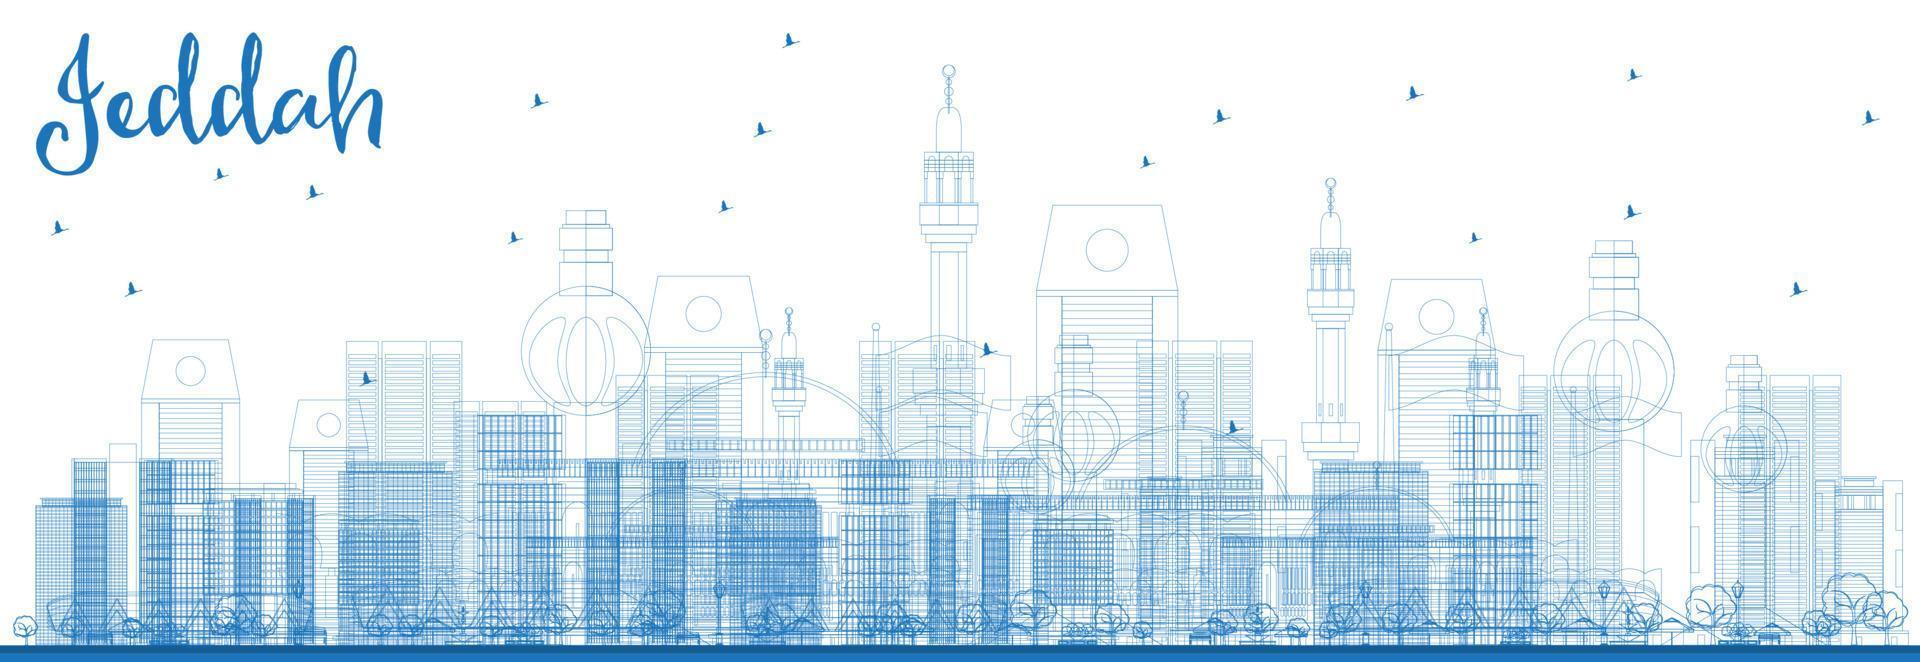 Outline Jeddah Skyline with Blue Buildings. vector